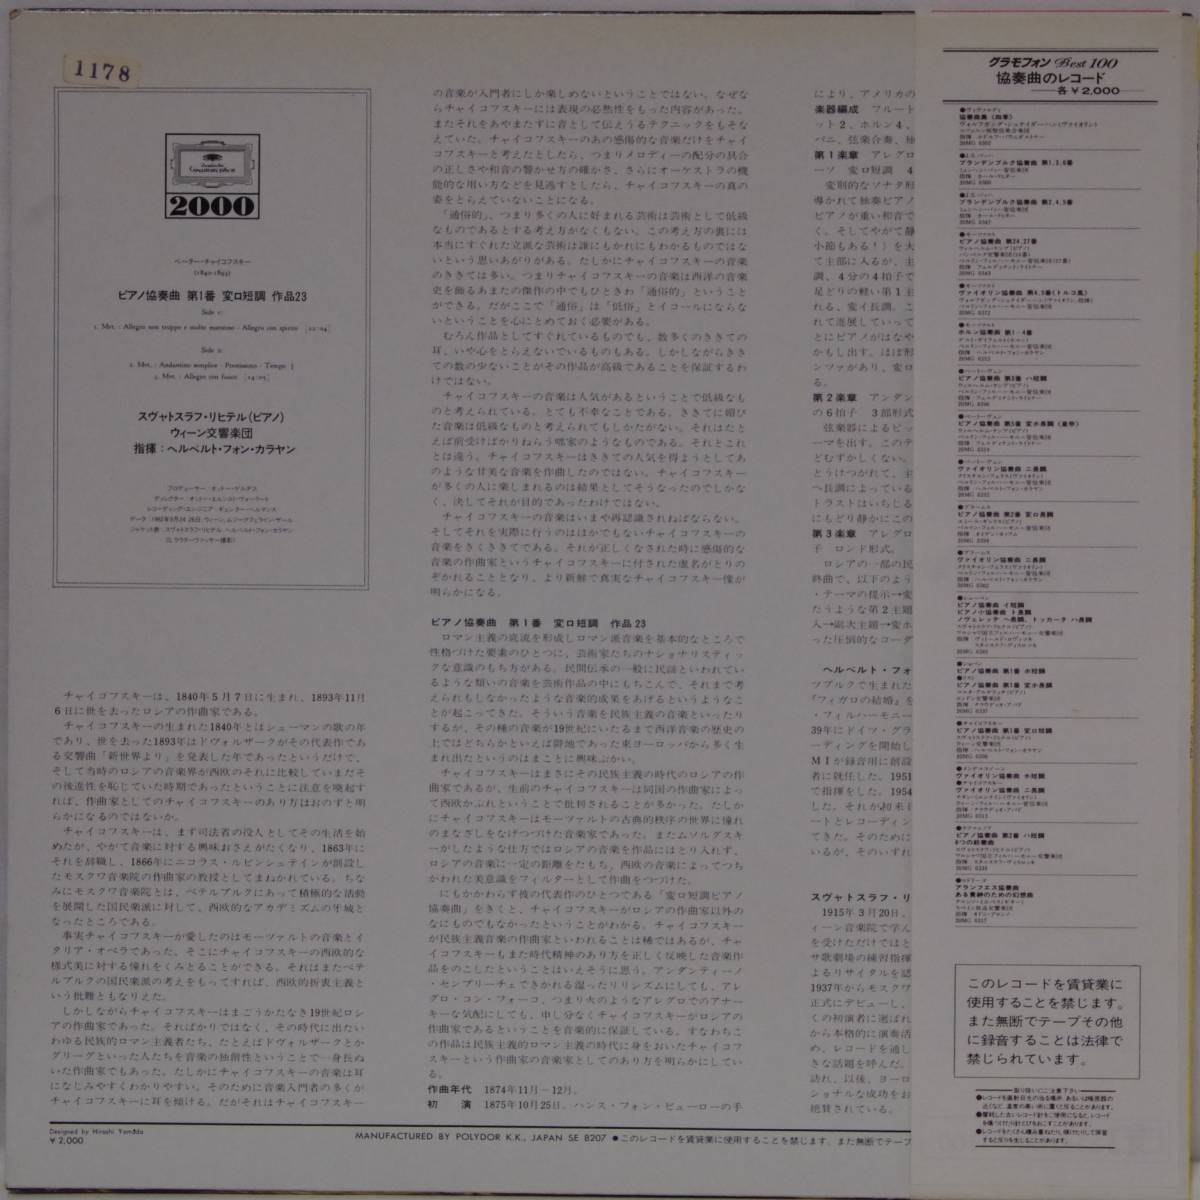 中古LPレコード(簡易洗浄済み)：スヴャトスラフ・リヒテル / チャイコフスキー ピアノ協奏曲第１番 _画像2